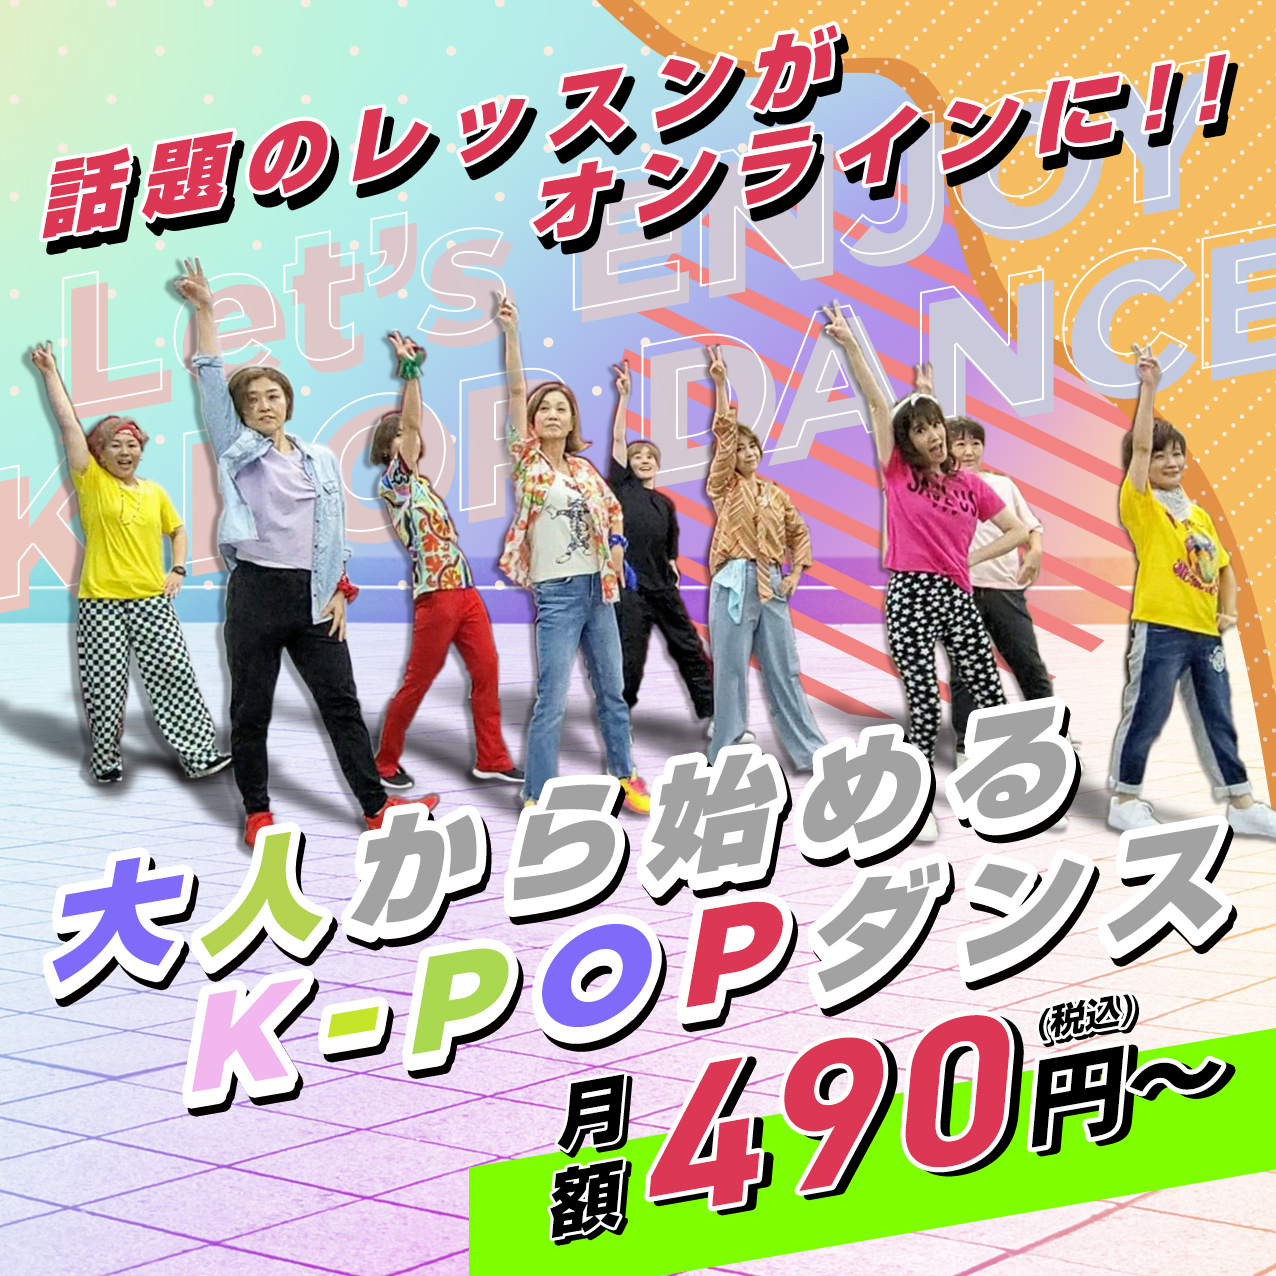 話題のレッスンがオンラインに!!大人から始めるK-POPダンス